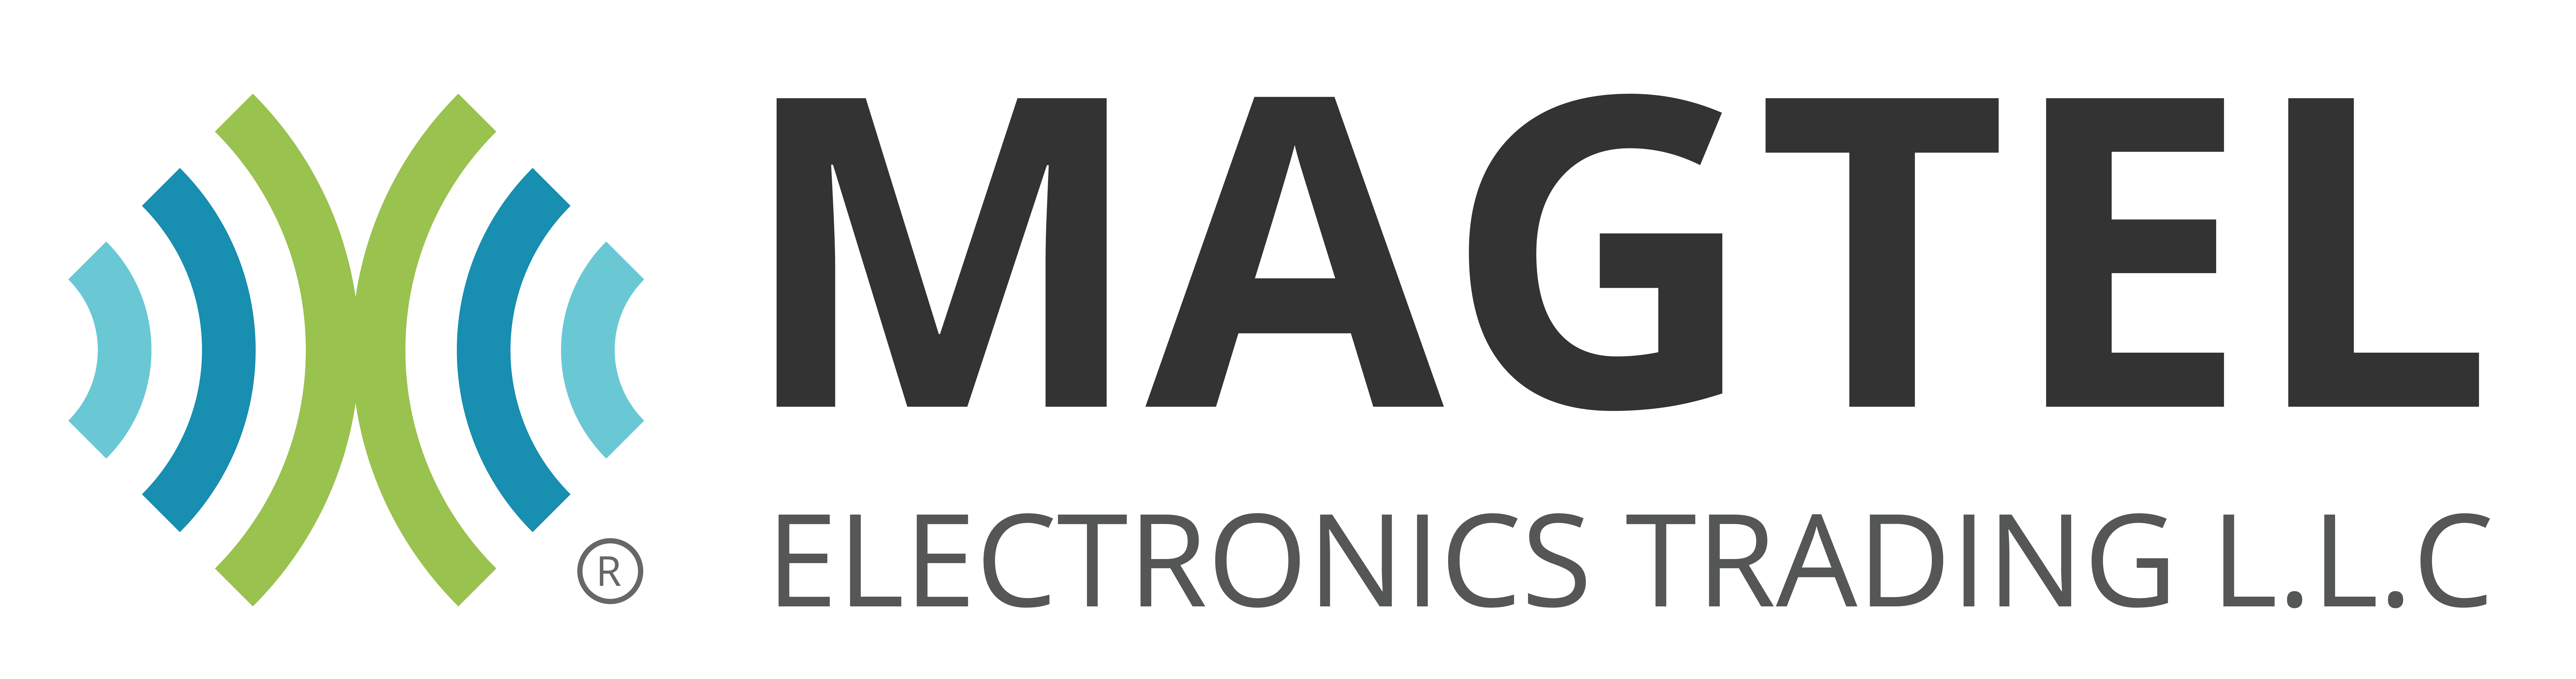 Magtel Electronics Trading L.L.C